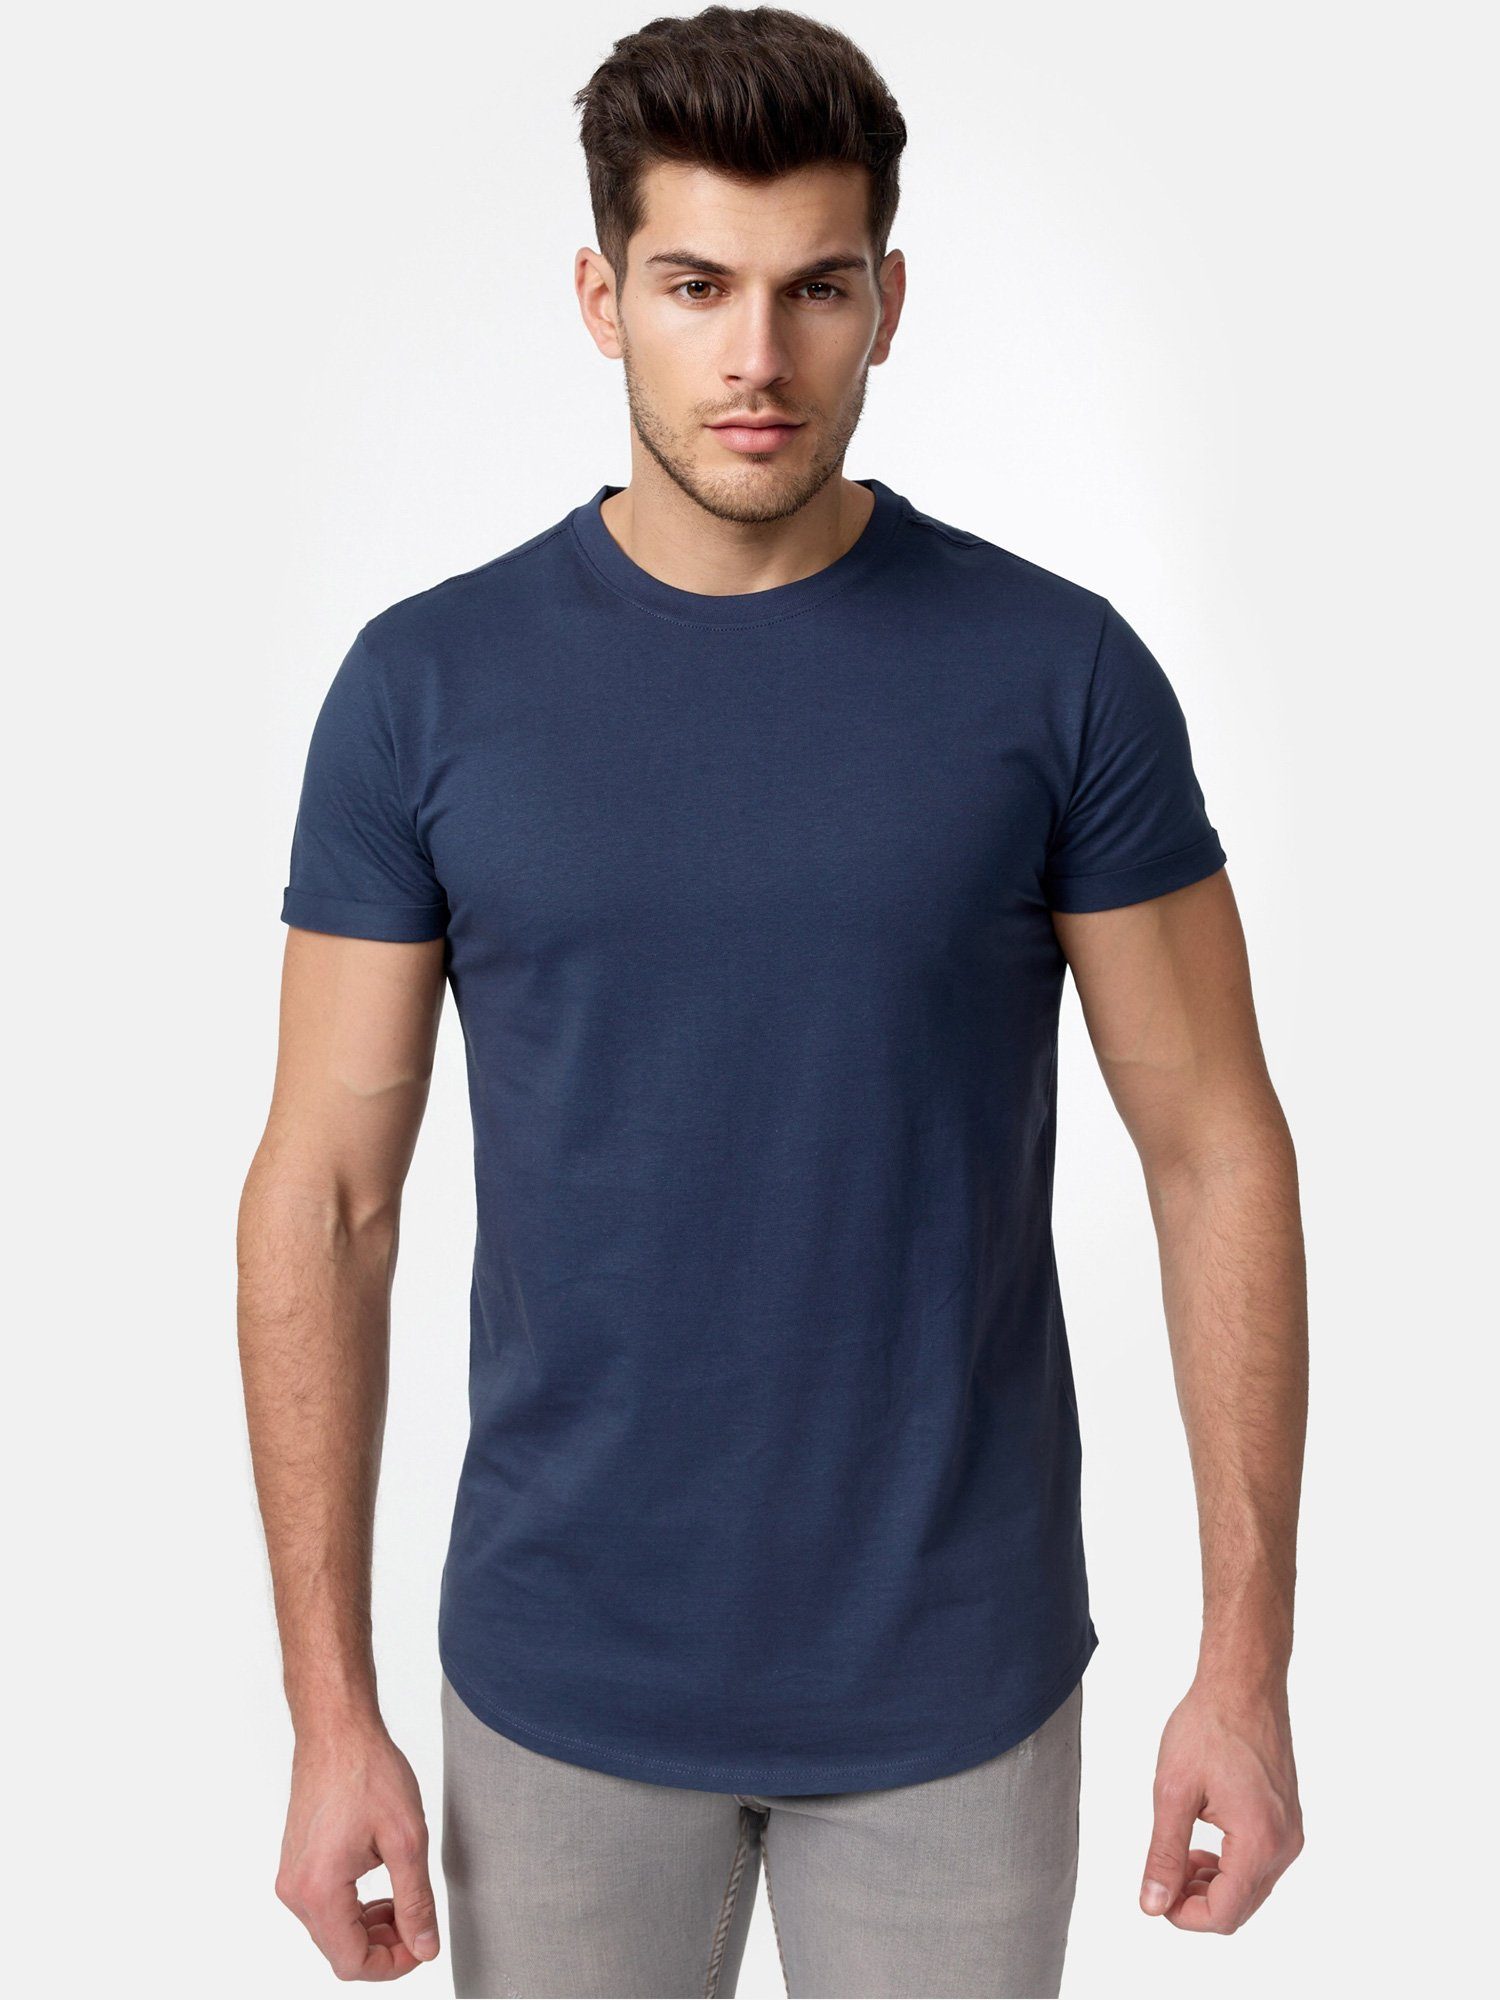 Tazzio T-Shirt E105 Herren Basic Rundhalsshirt navy